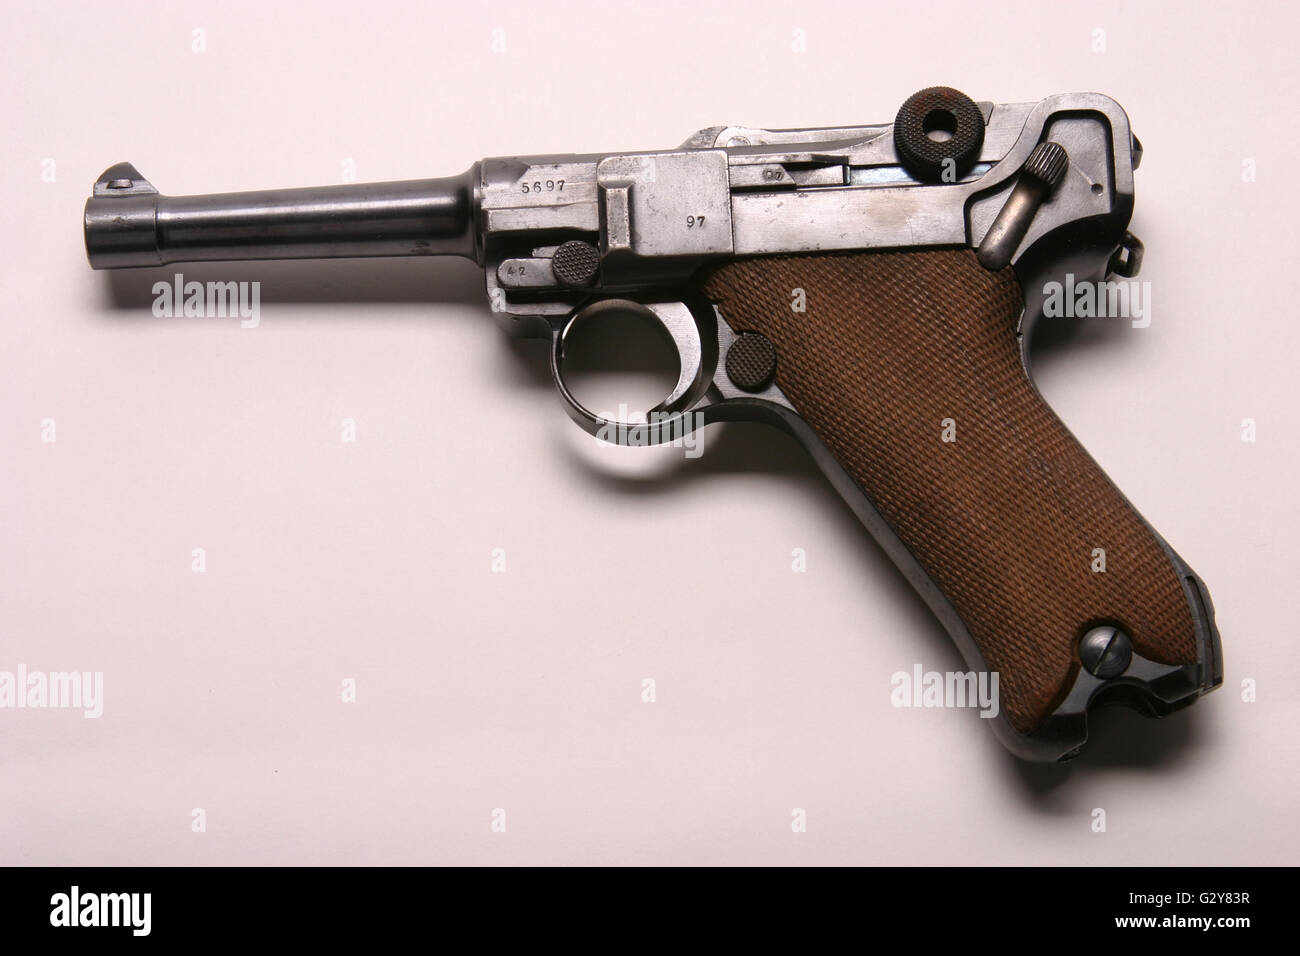 Sale for luger german pistols Luger Guns